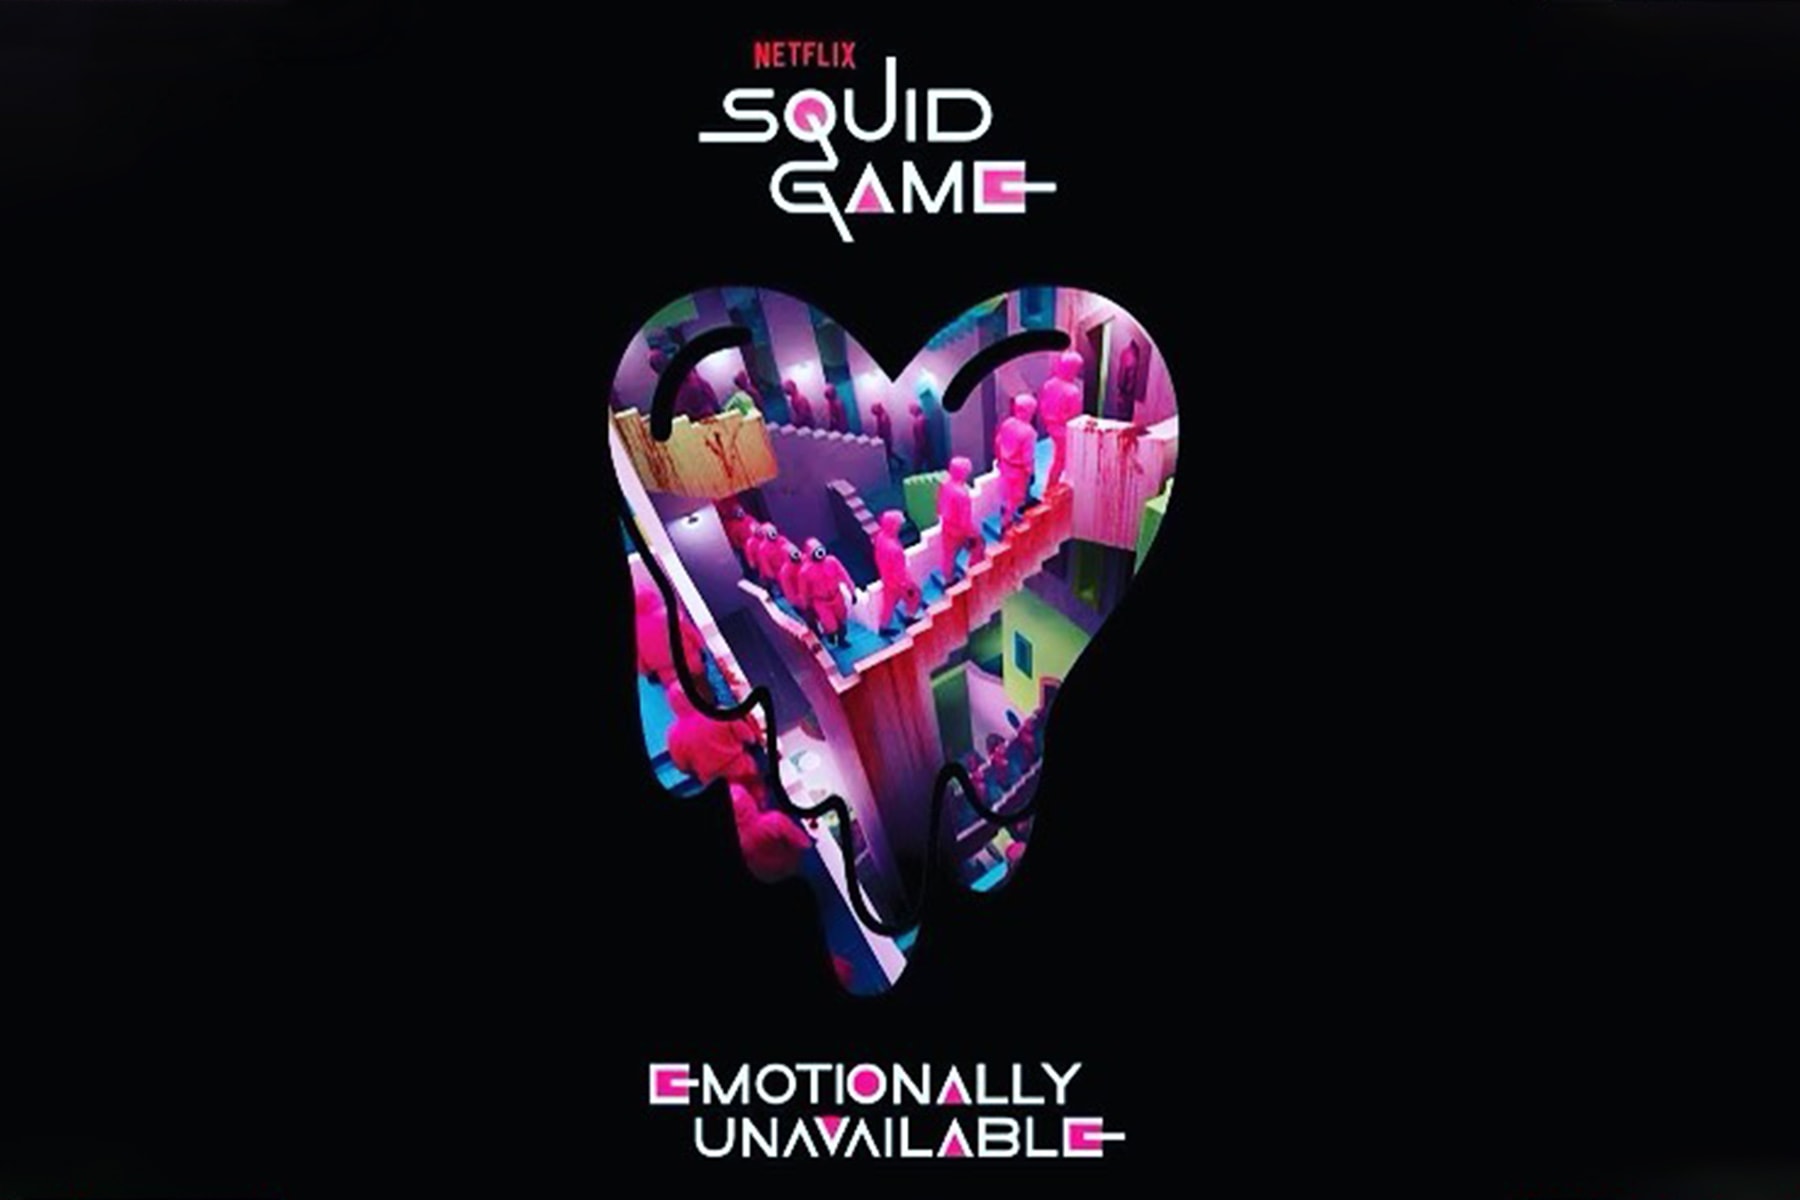 陳冠希曝光《魷魚遊戲 Squid Game》x Emotionally Unavailable 最新聯乘企劃